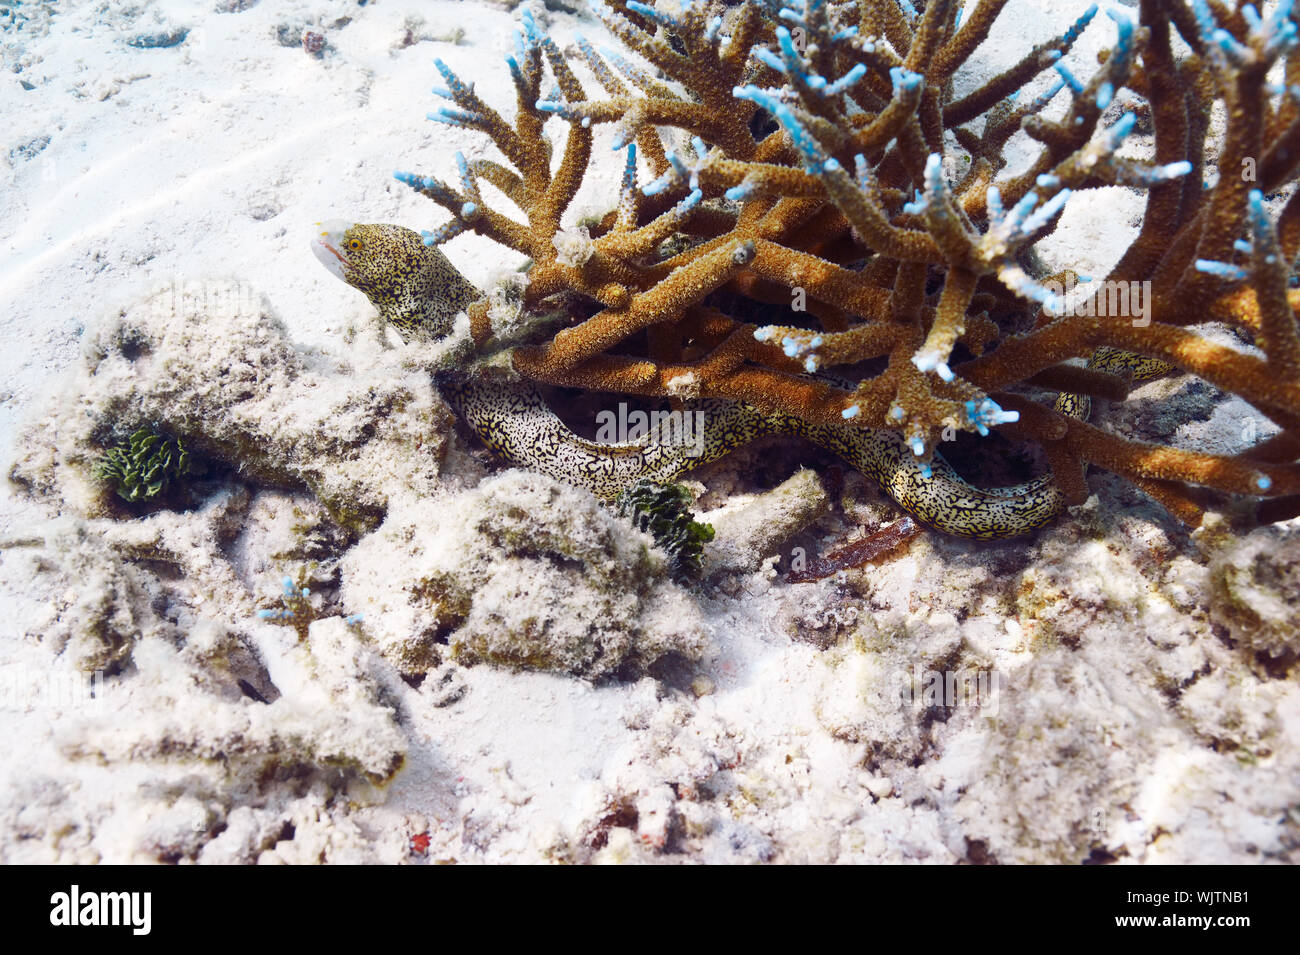 Spotted moray eel pesci nascosti nella barriera corallina Foto Stock